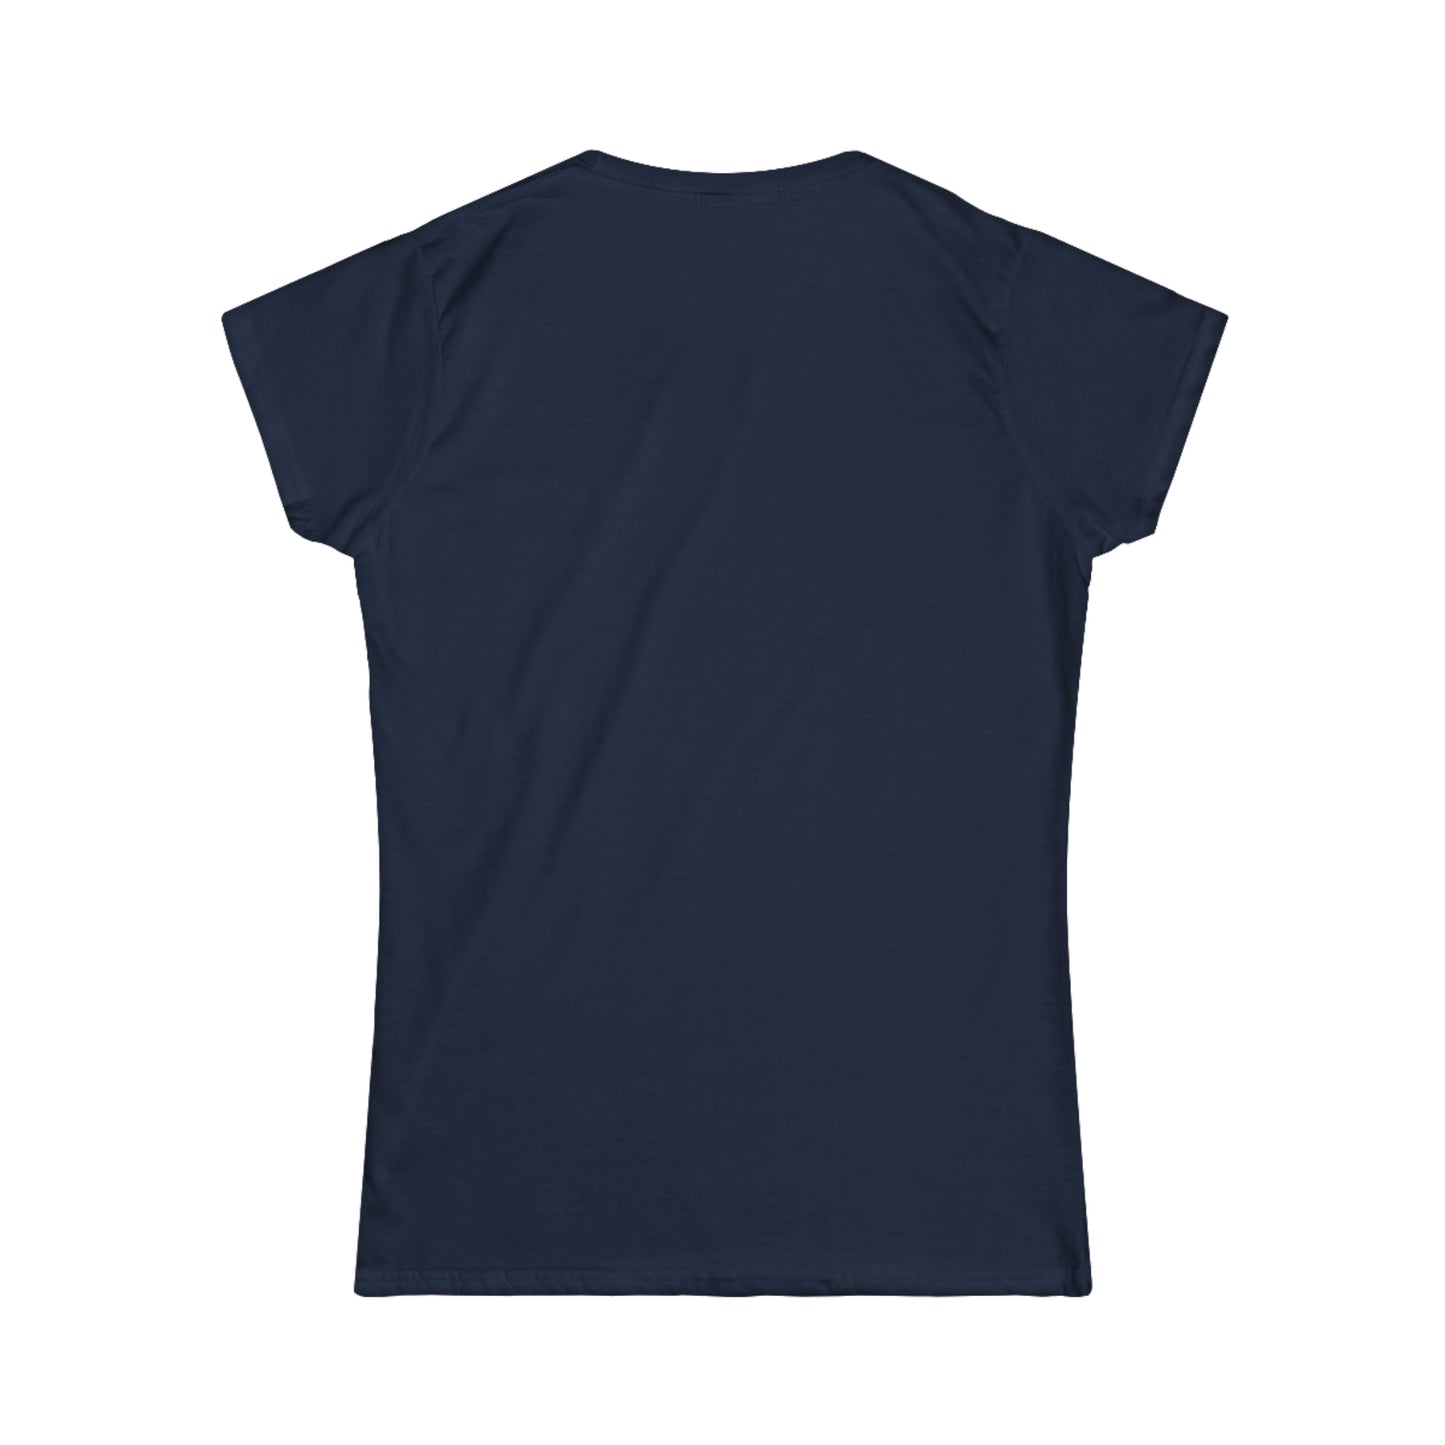 Boutique - Monochrome Building & Map - Ladies Softstyle T-Shirt